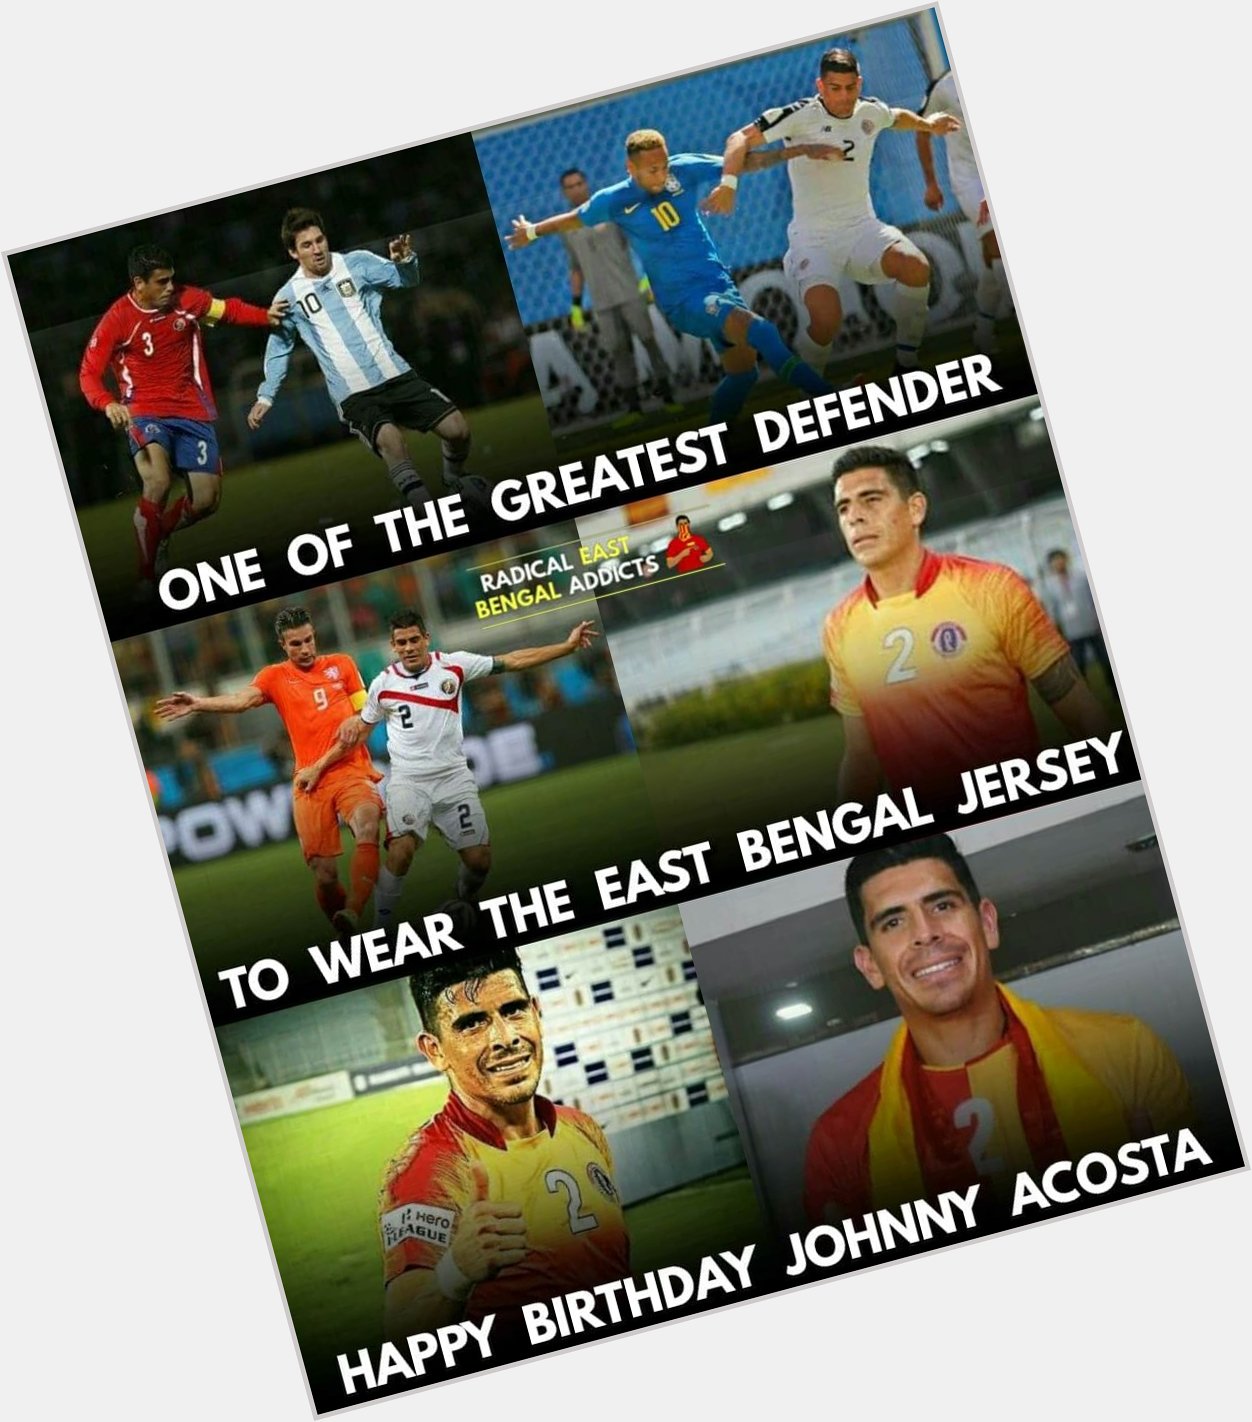 Happy Birthday Johnny Acosta. 